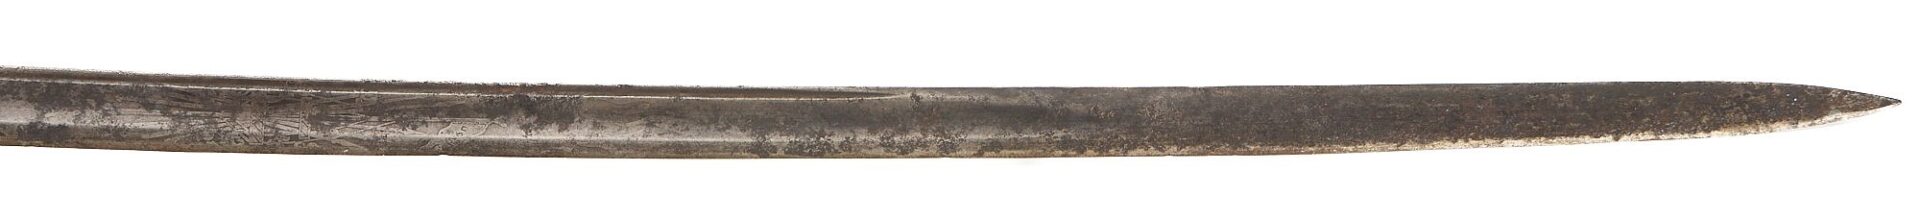 Lot 555: 2 M1850 Swords & 1 Naval Officer's Sword, Horstmann Philadelphia & NY